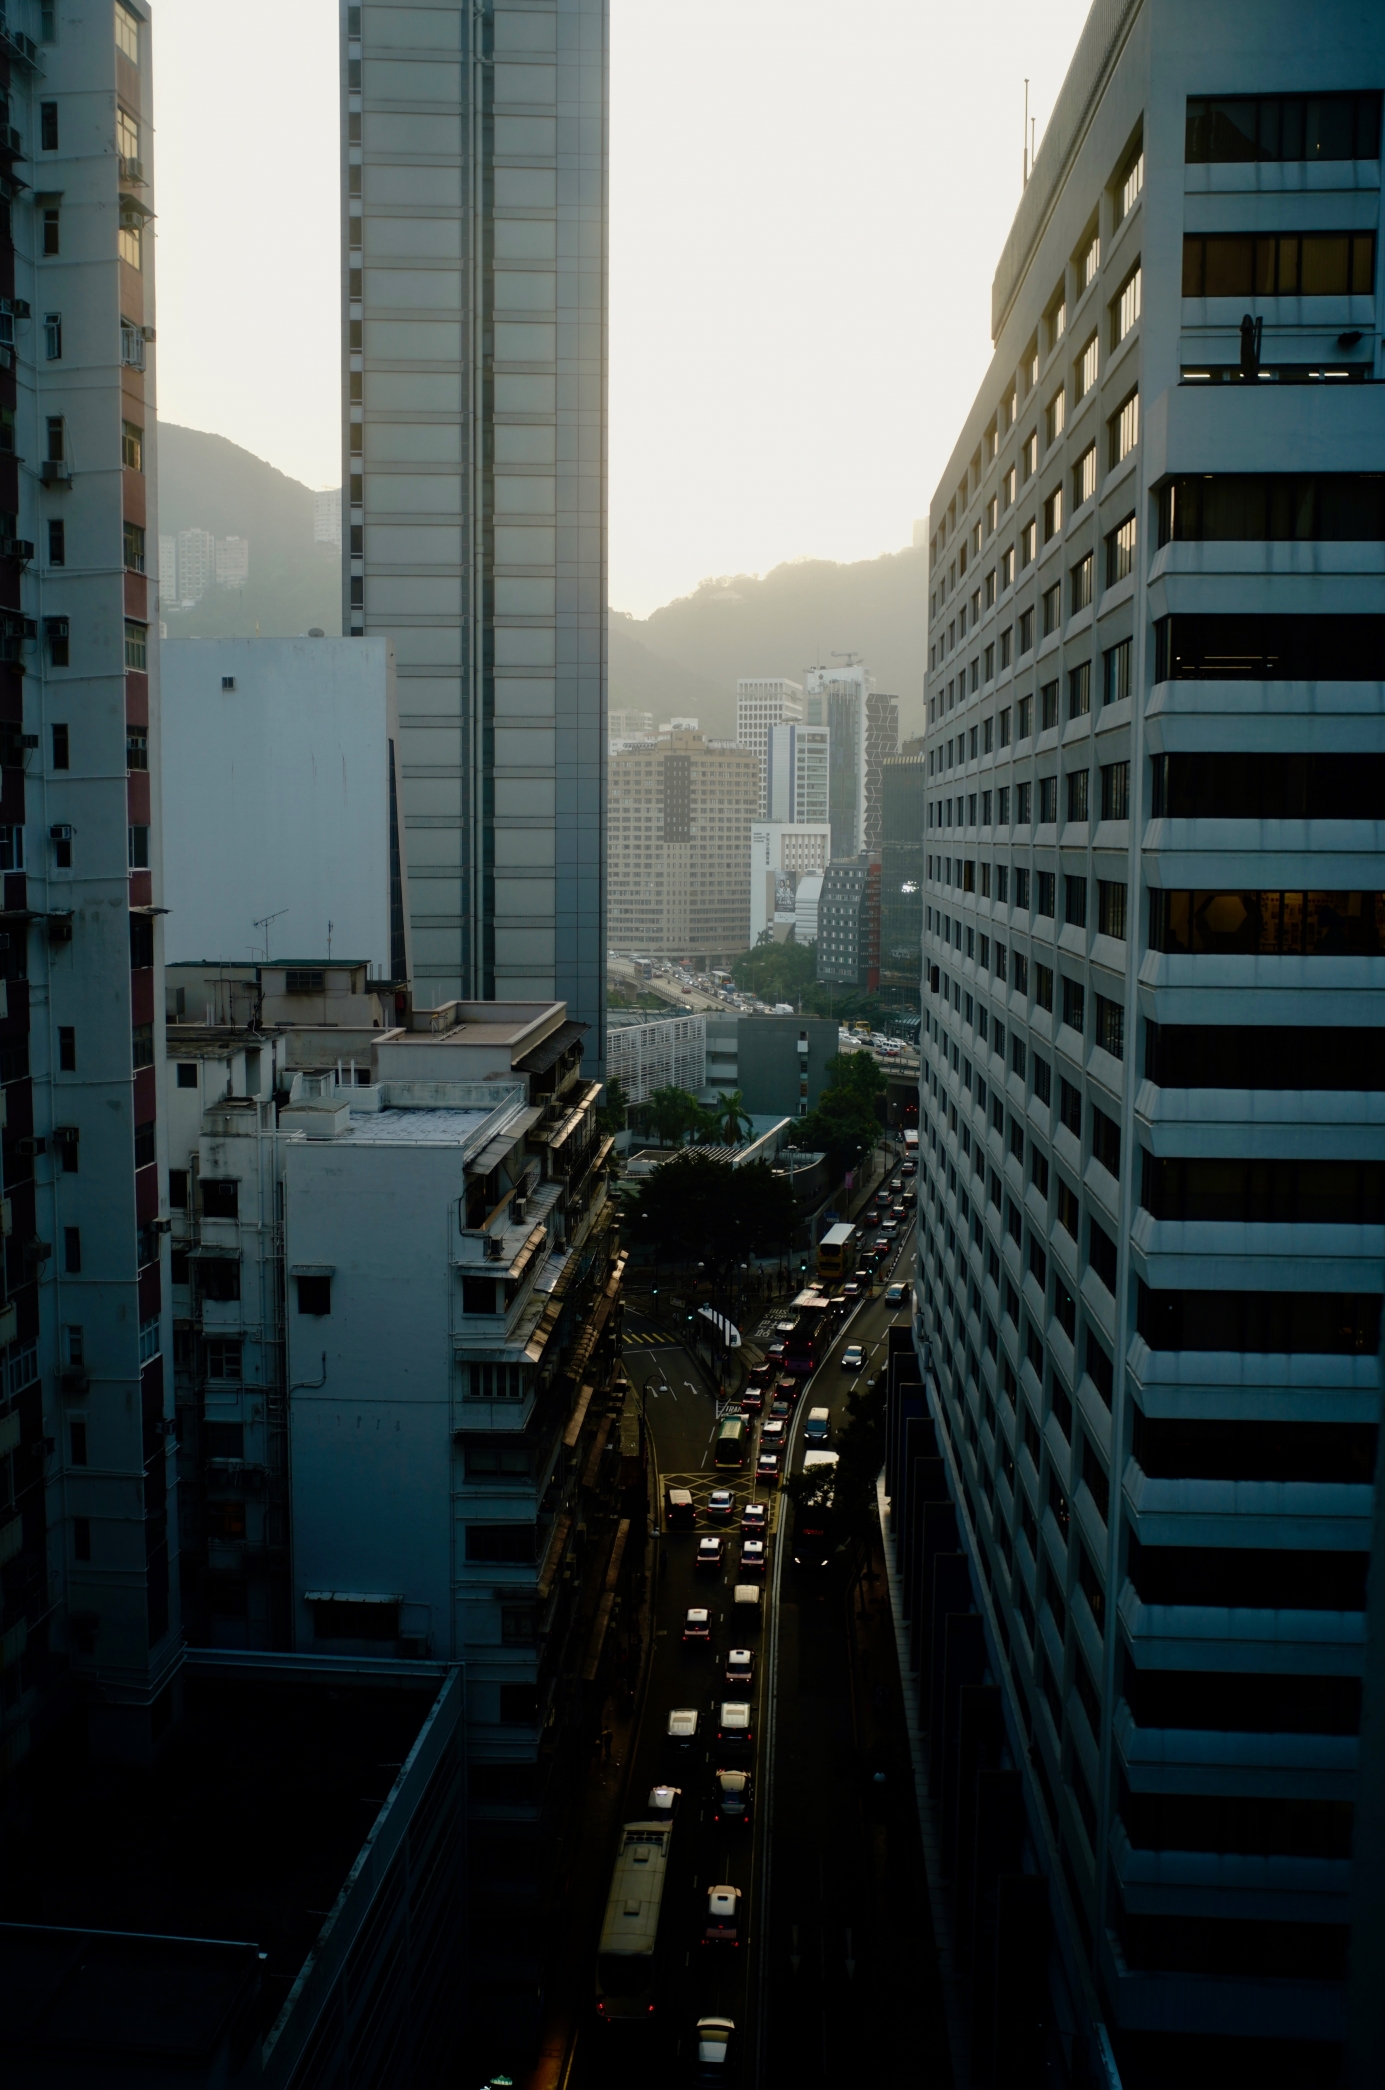 Streets of causeway bay, Hong Kong